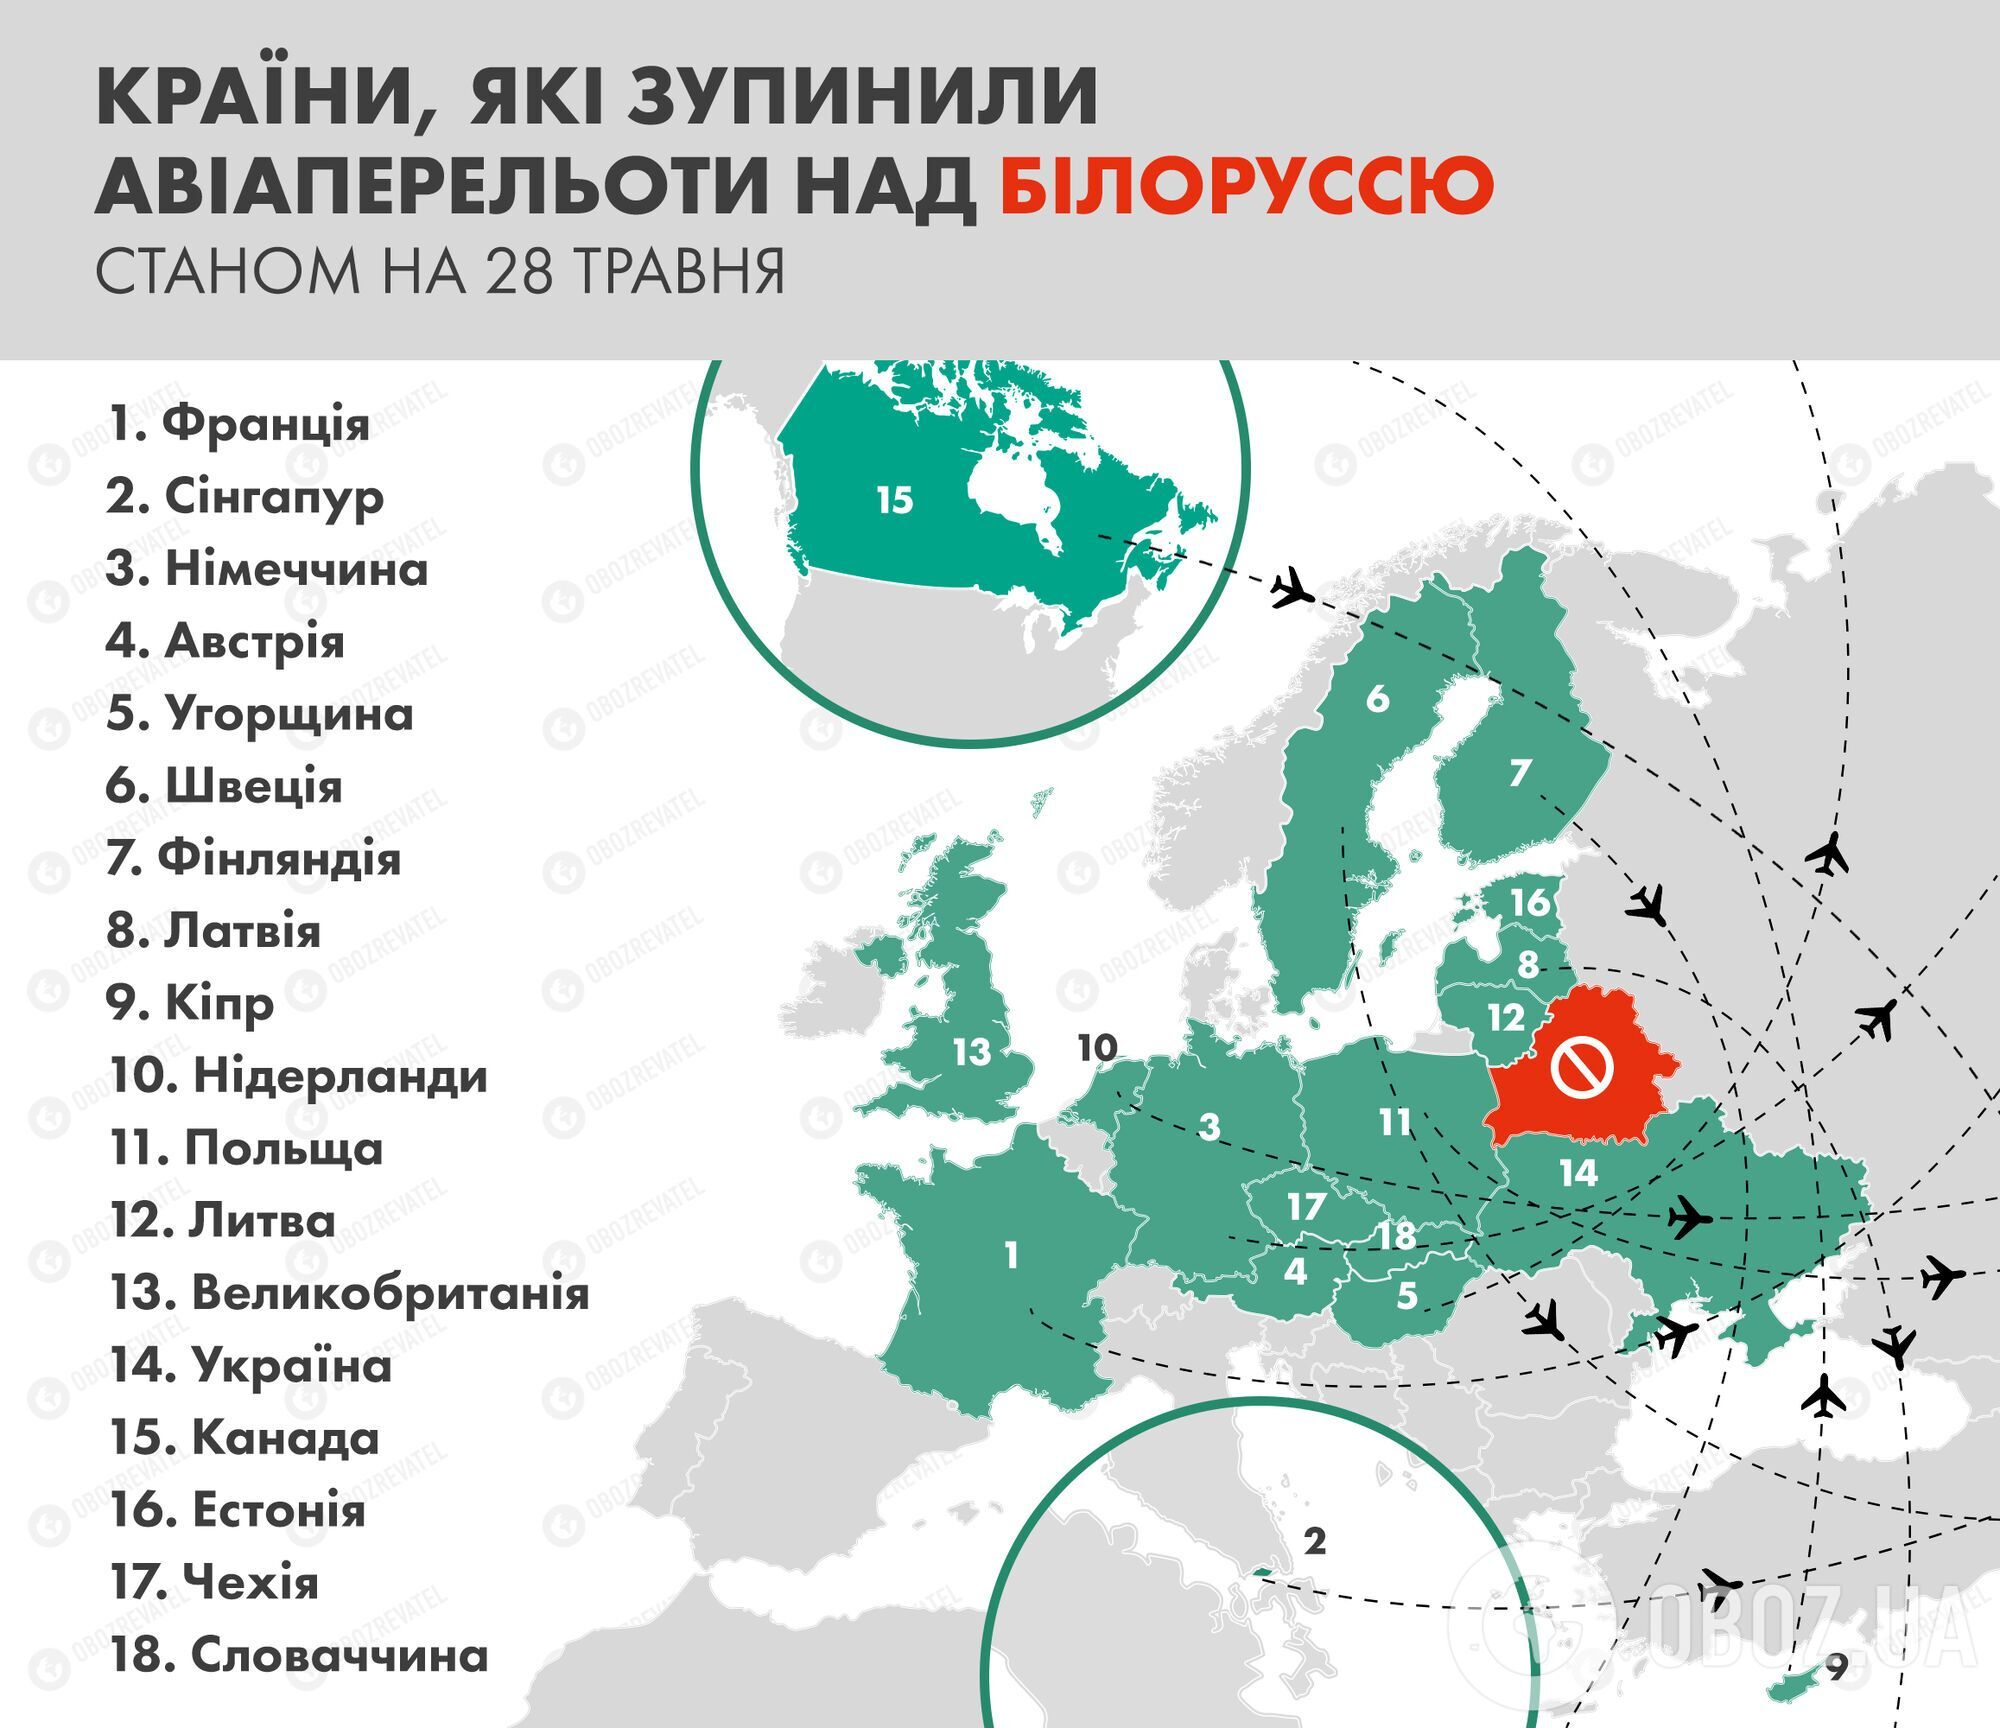 Країни ЄС, Україна, Сінгапур і Канада вже припинили авіасполучення з Мінськом.